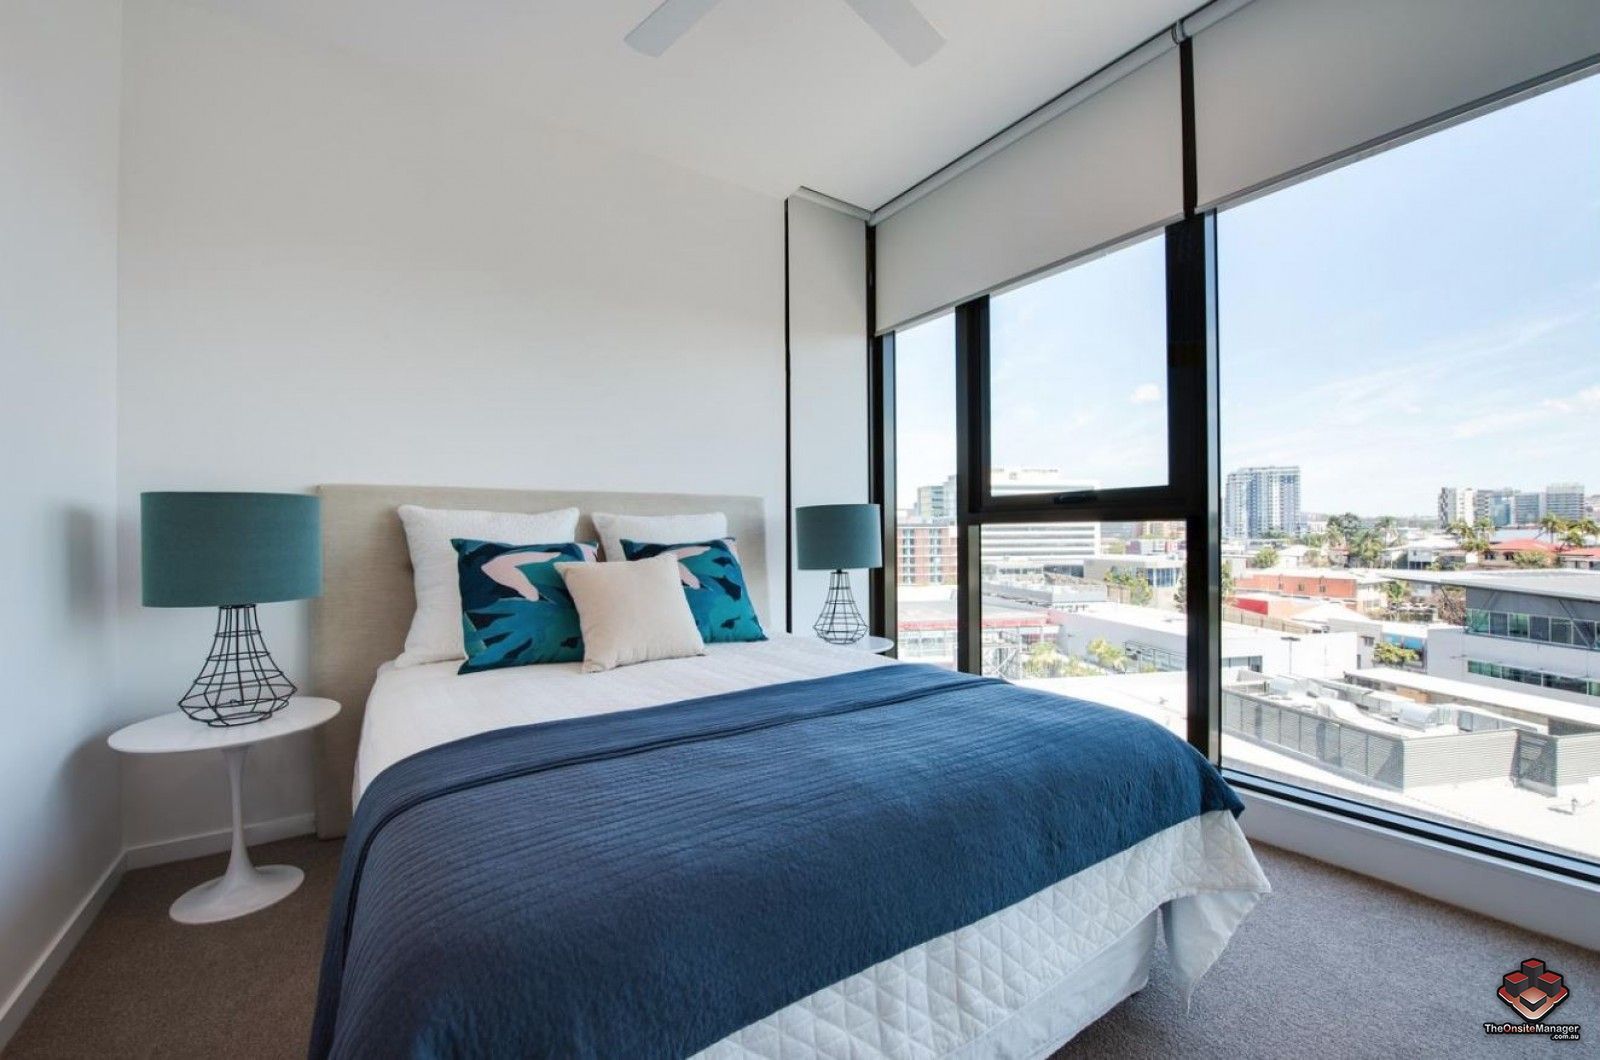 1 bedrooms Apartment / Unit / Flat in ID:21116710/24 Stratton Street NEWSTEAD QLD, 4006